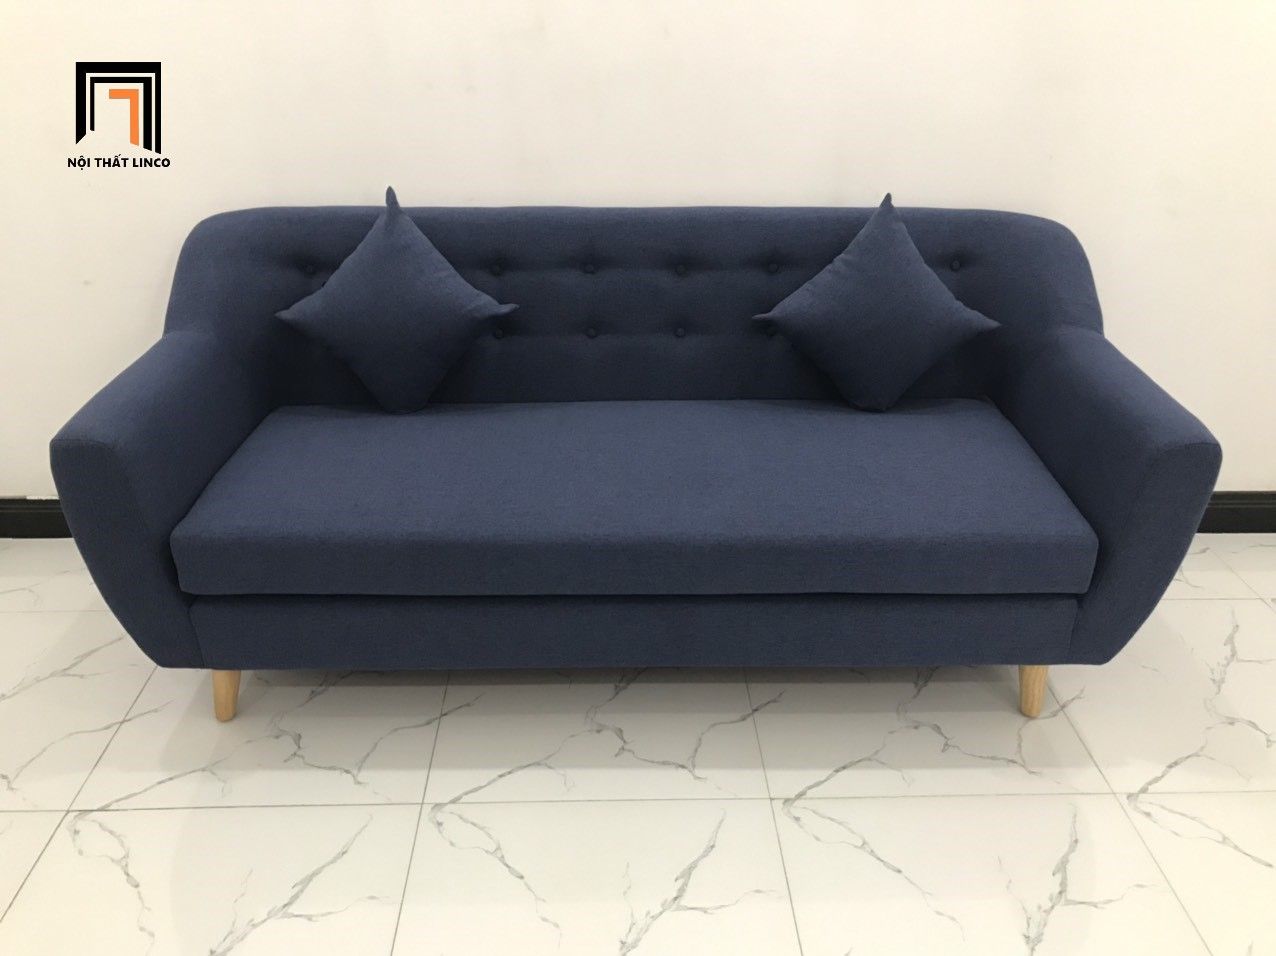  Bộ bàn ghế sofa băng 1m9 giá rẻ BGN màu xanh đen cho chung cư 